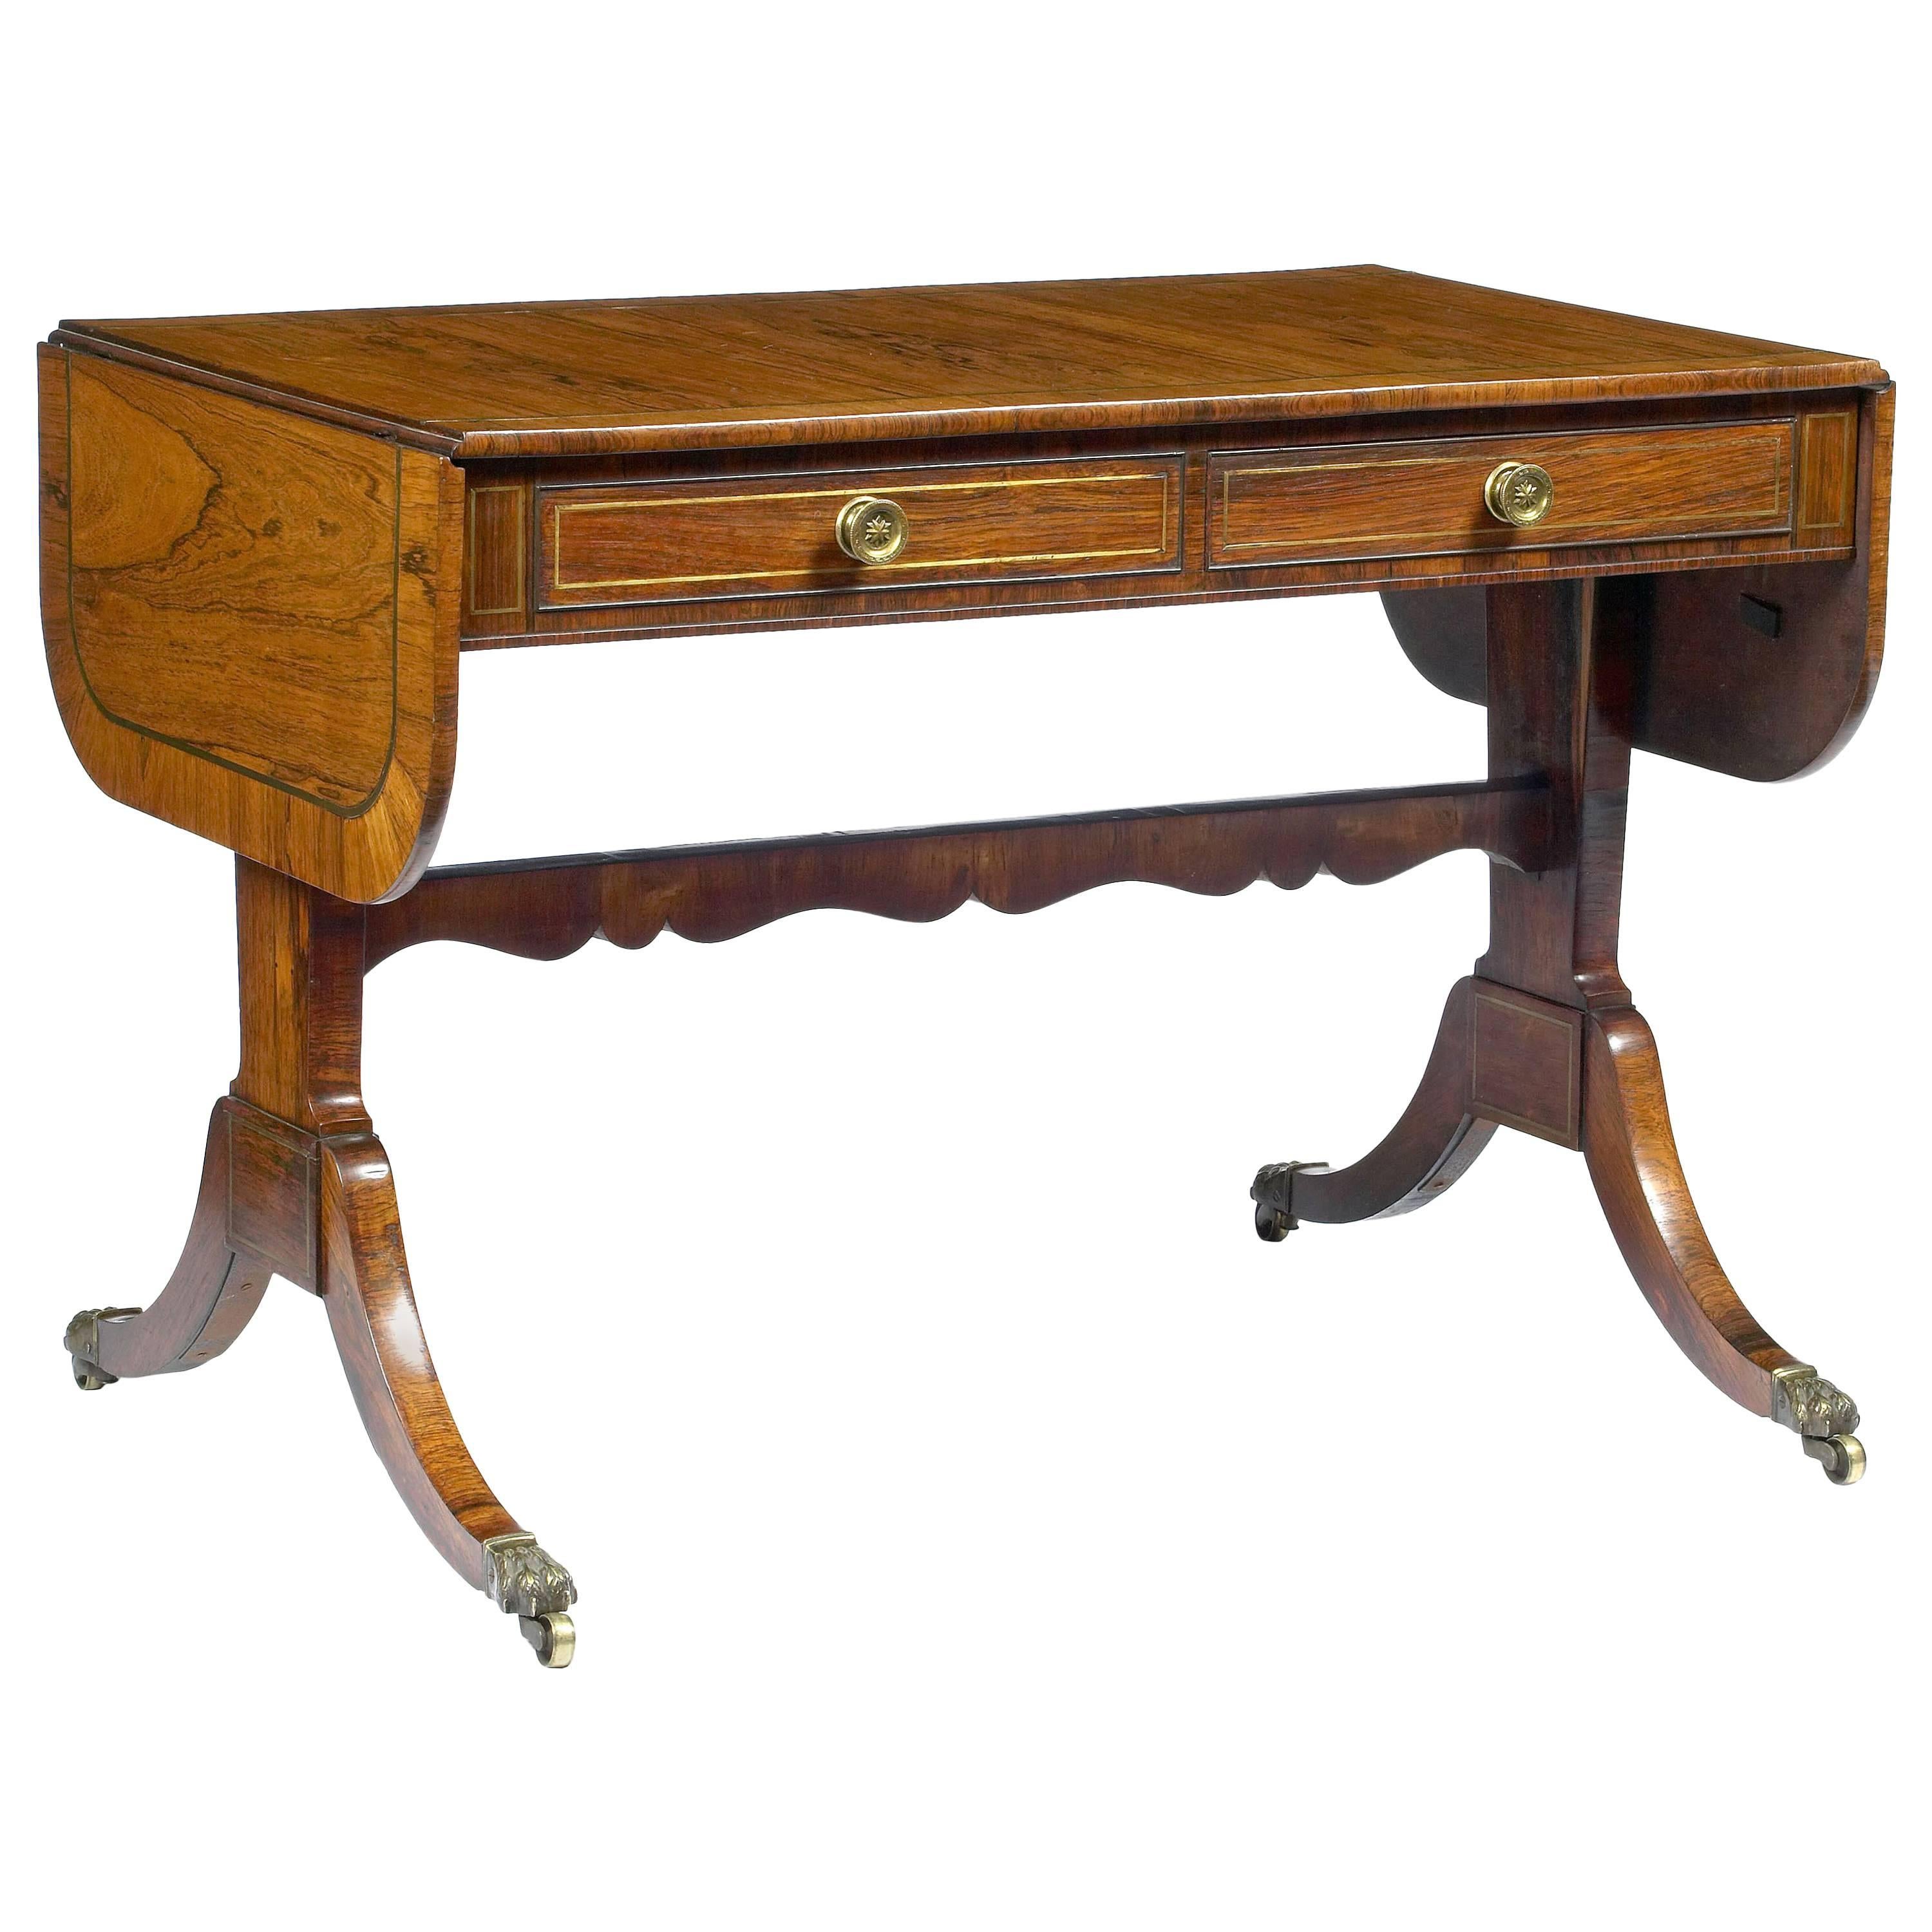 Early 19th Century Regency Sofa Table after Thomas Sheraton